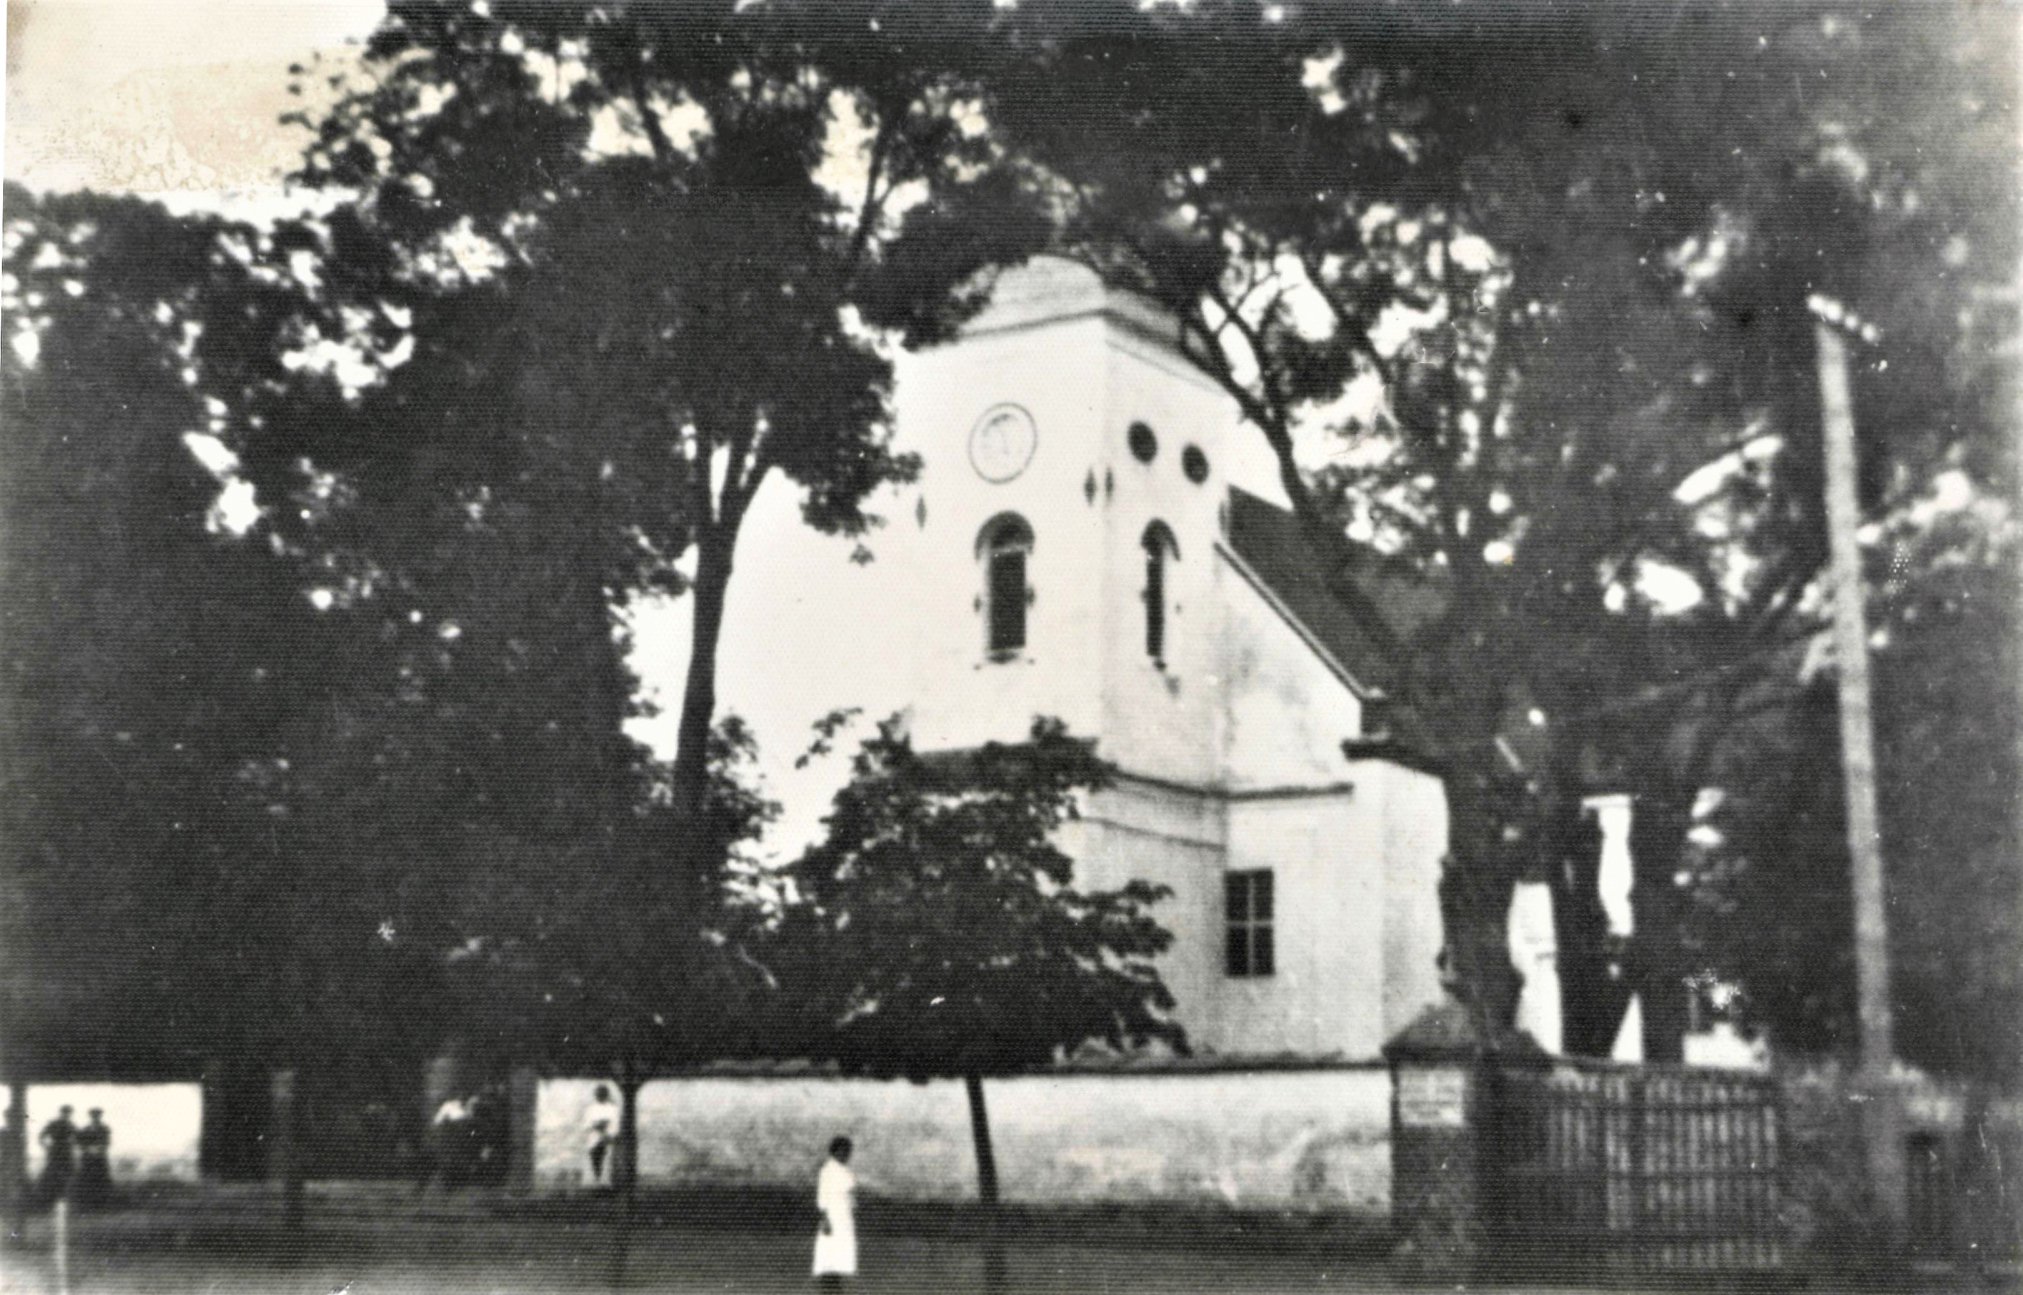 Fot. Muzeum Regionalne w Bełchatowie. Zdjęcie kościoła z murowanym ogrodzeniem zrobiono przed I wojną światową.